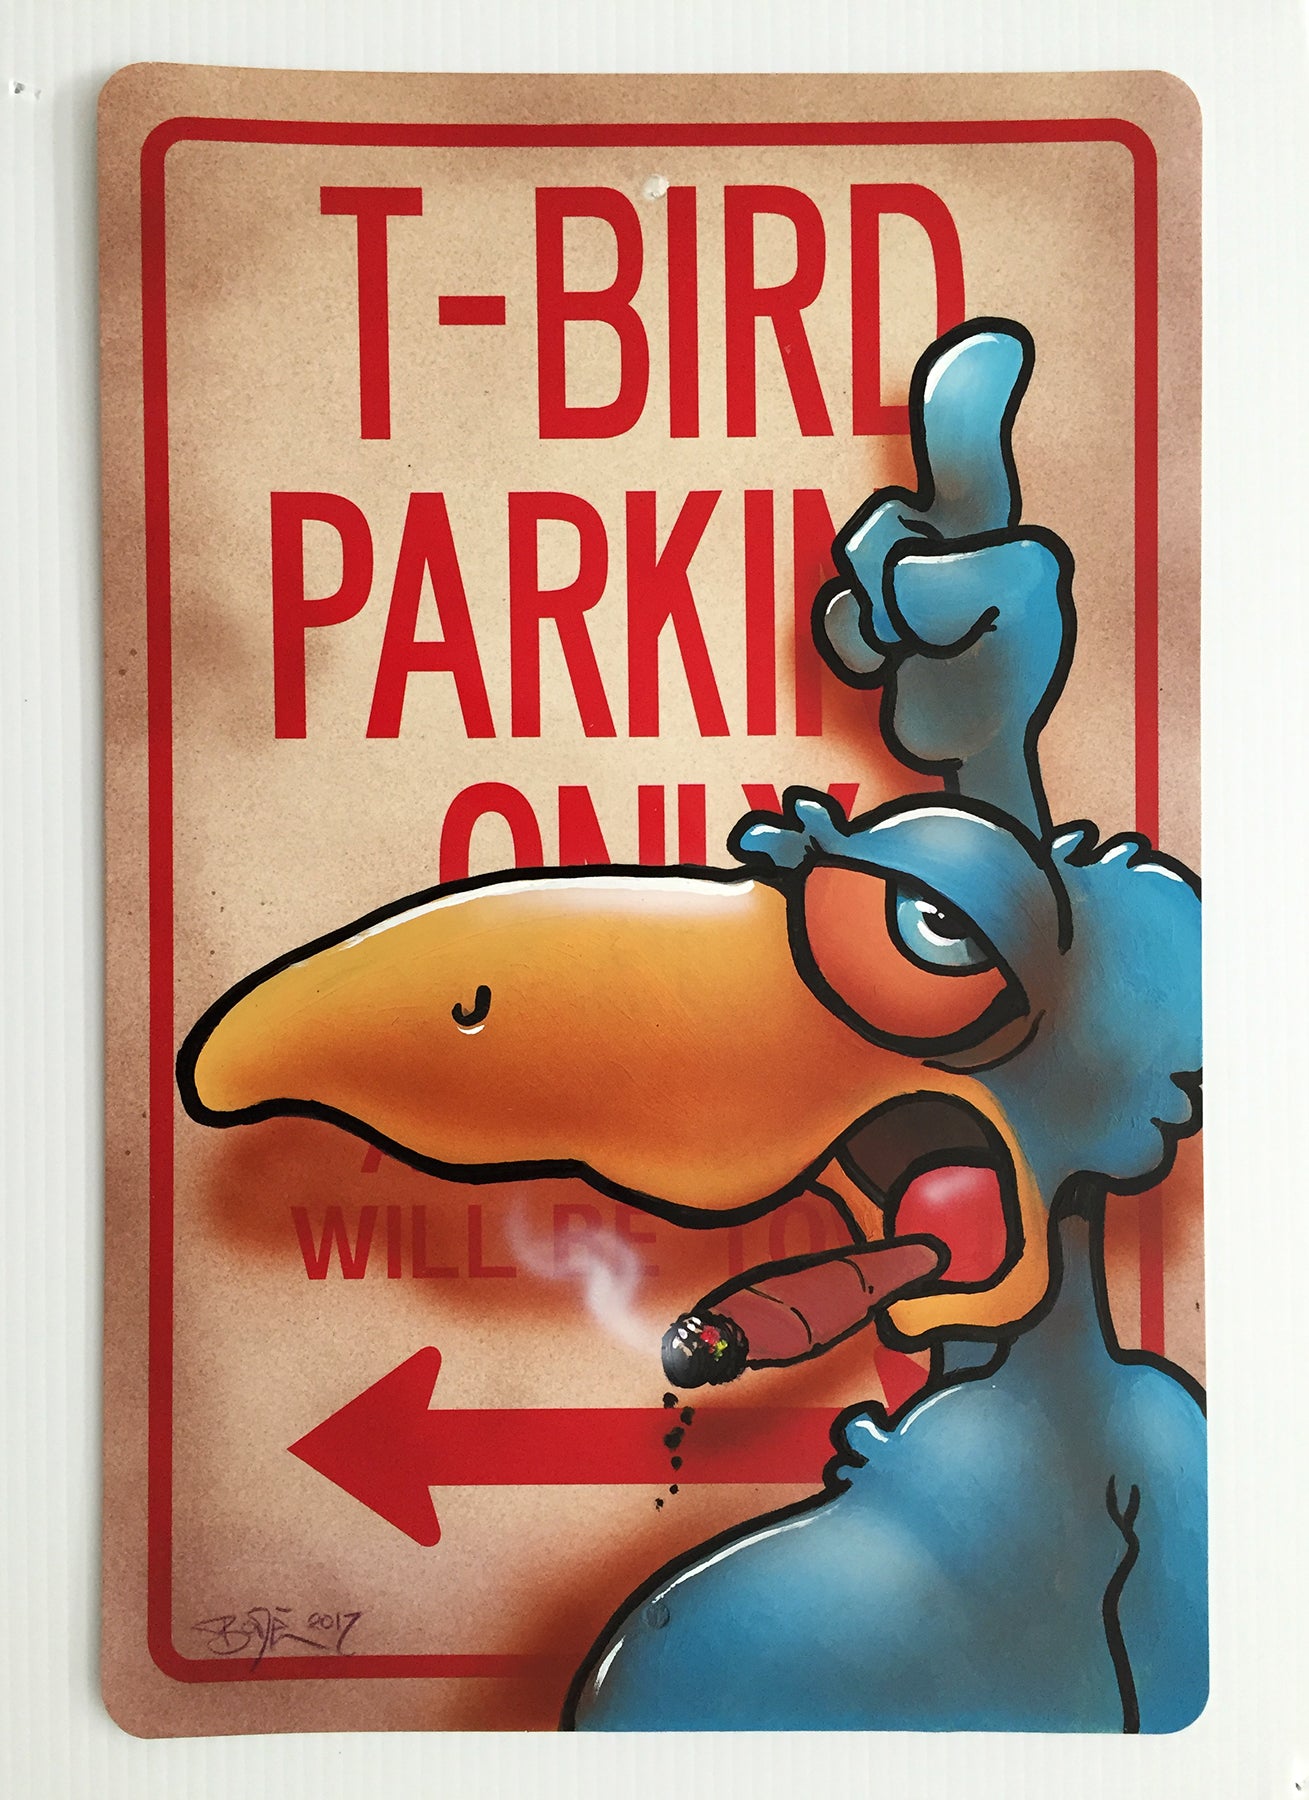 MARK BODE  "T Bird Parking Only"